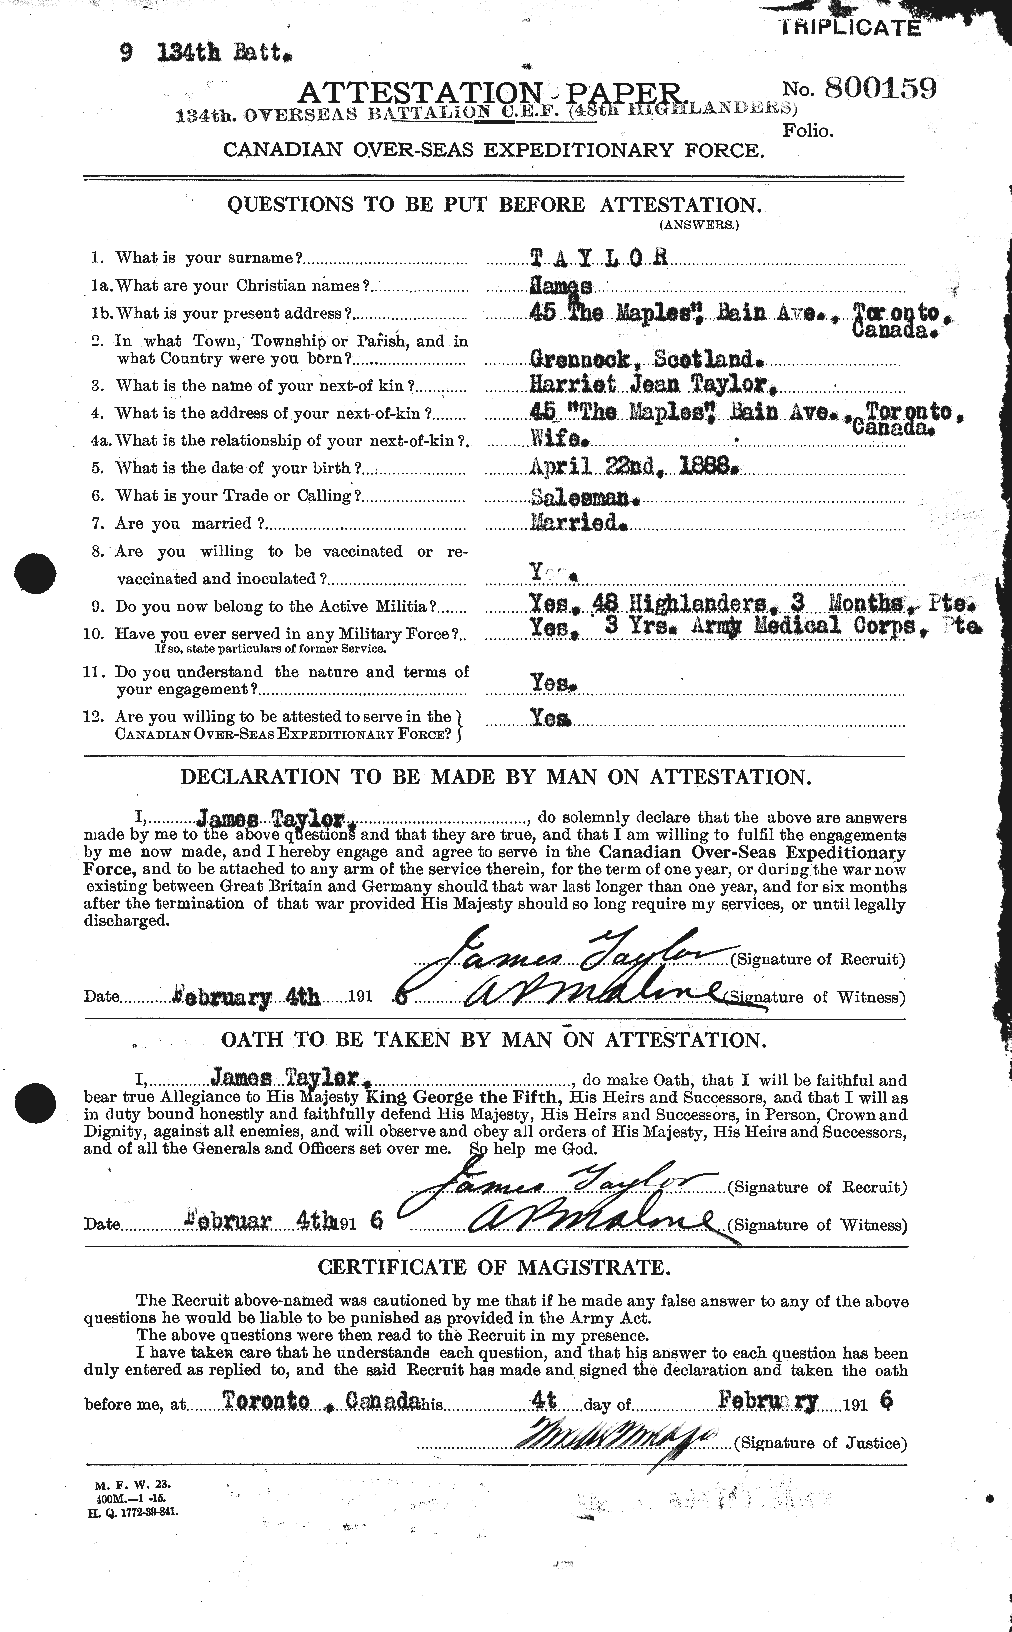 Dossiers du Personnel de la Première Guerre mondiale - CEC 626651a